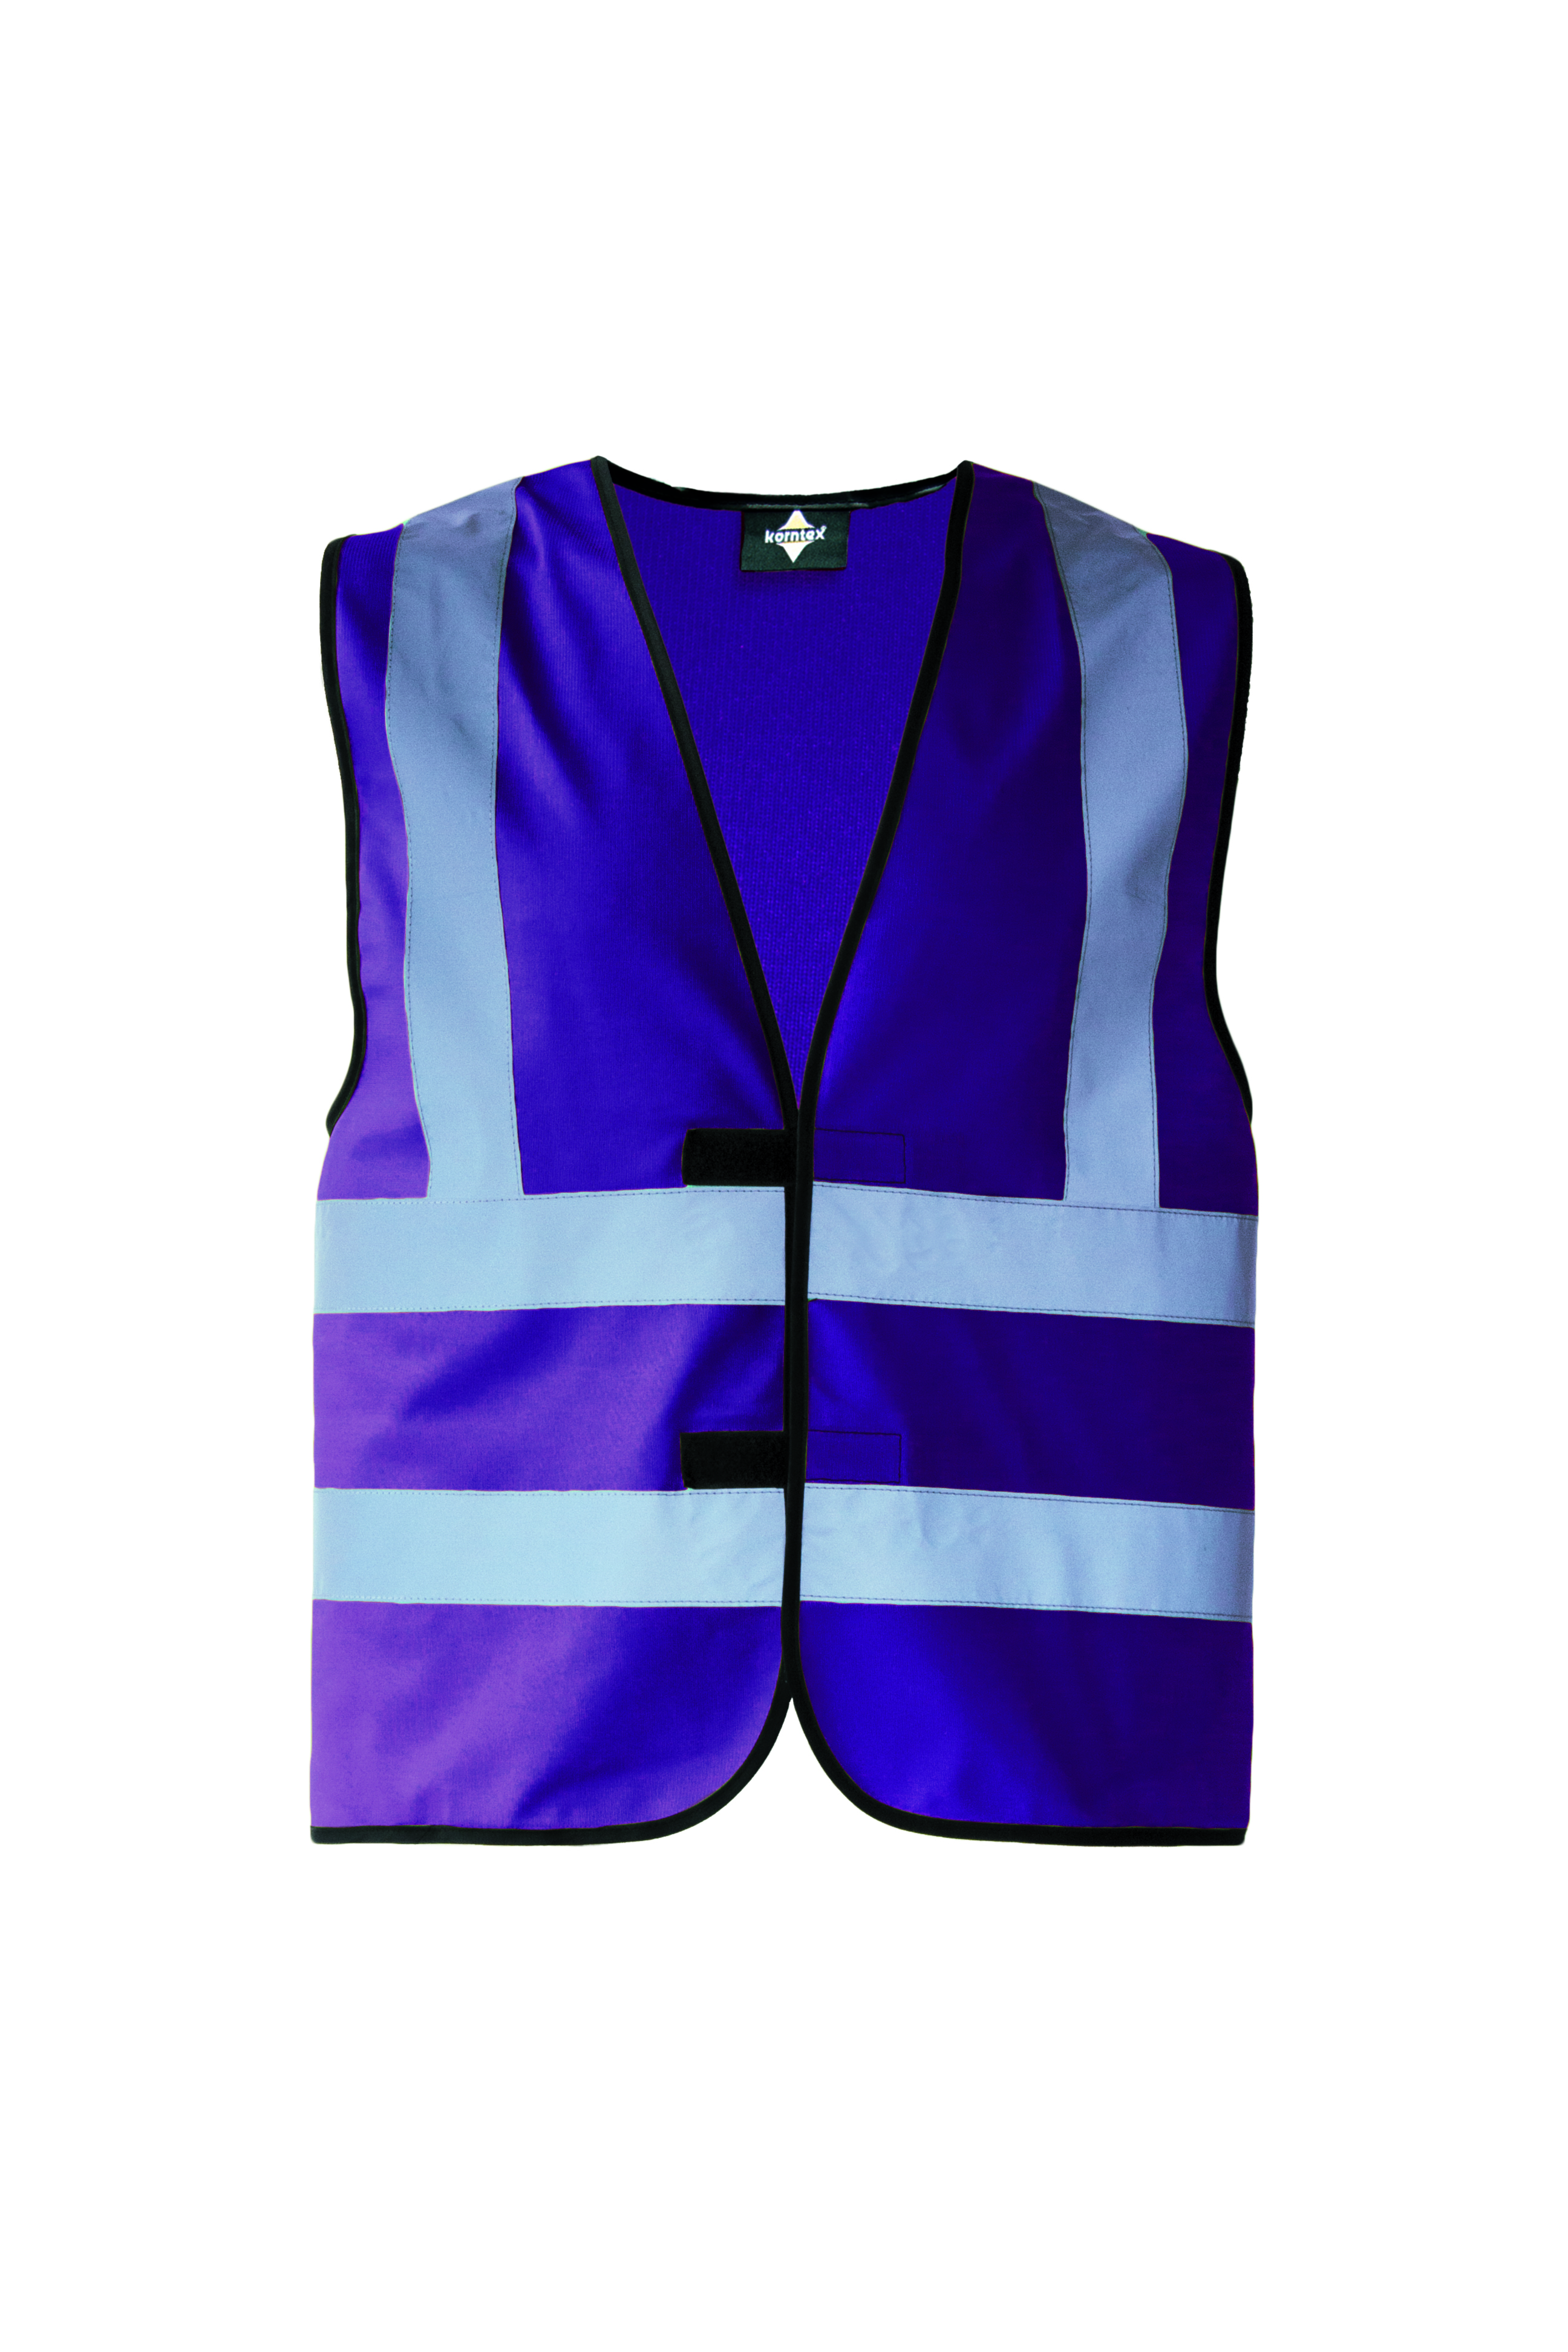 Vesta Korntex Hi-Vis Safety Vest With 4 Reflective Stripes Hannover